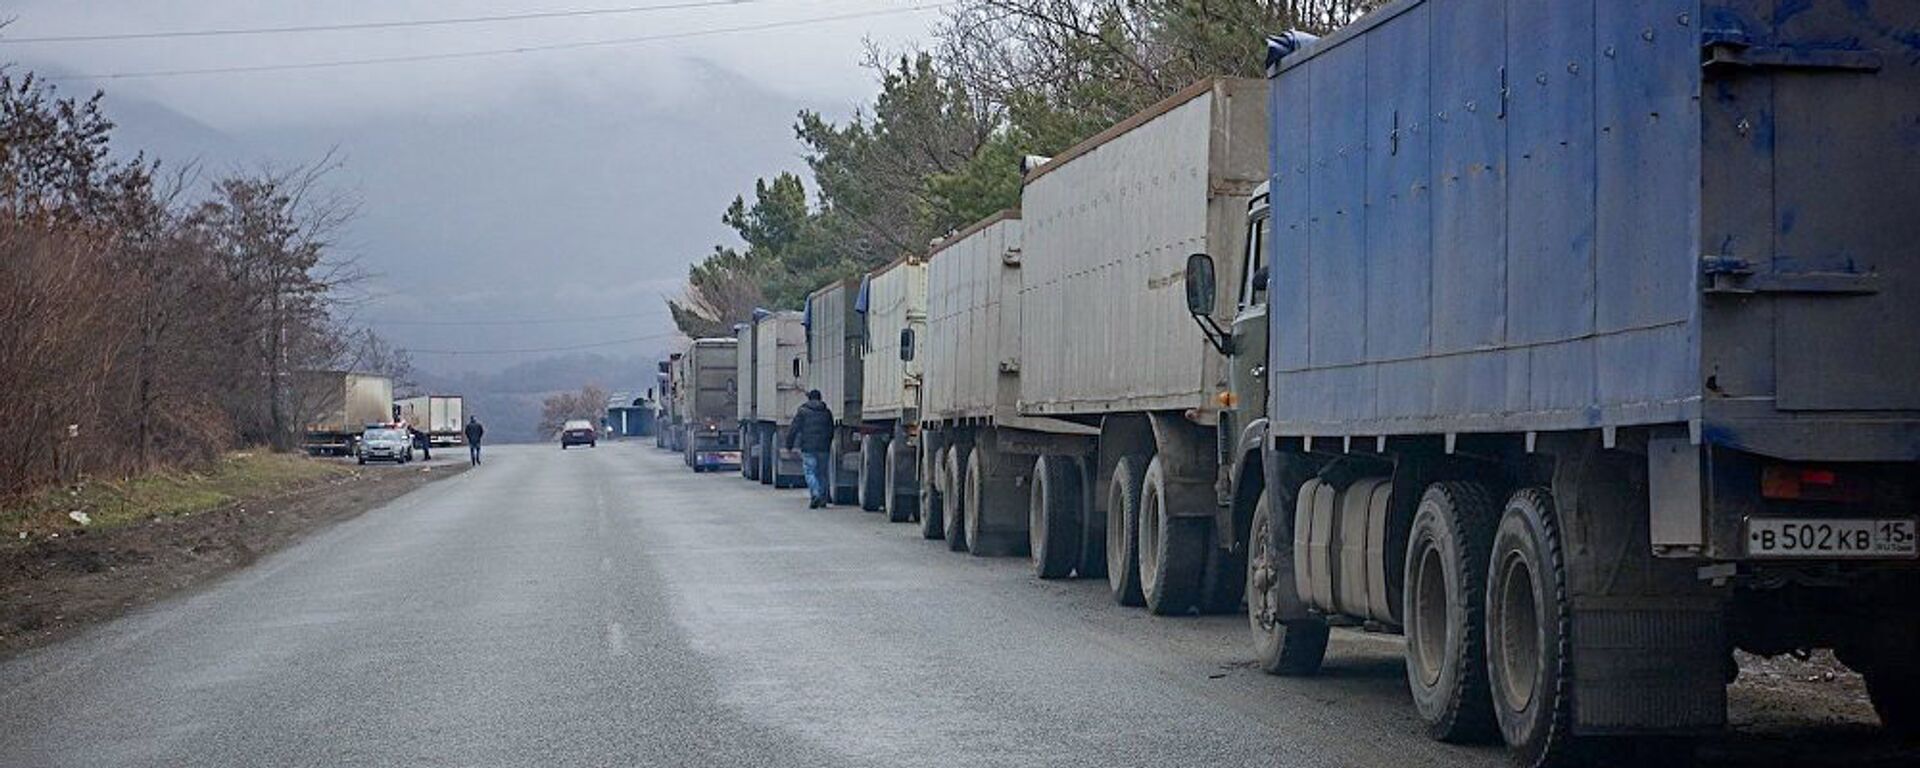 Очередь грузовых автомобилей на Военно-Грузинской дороге. - Sputnik Армения, 1920, 05.04.2021